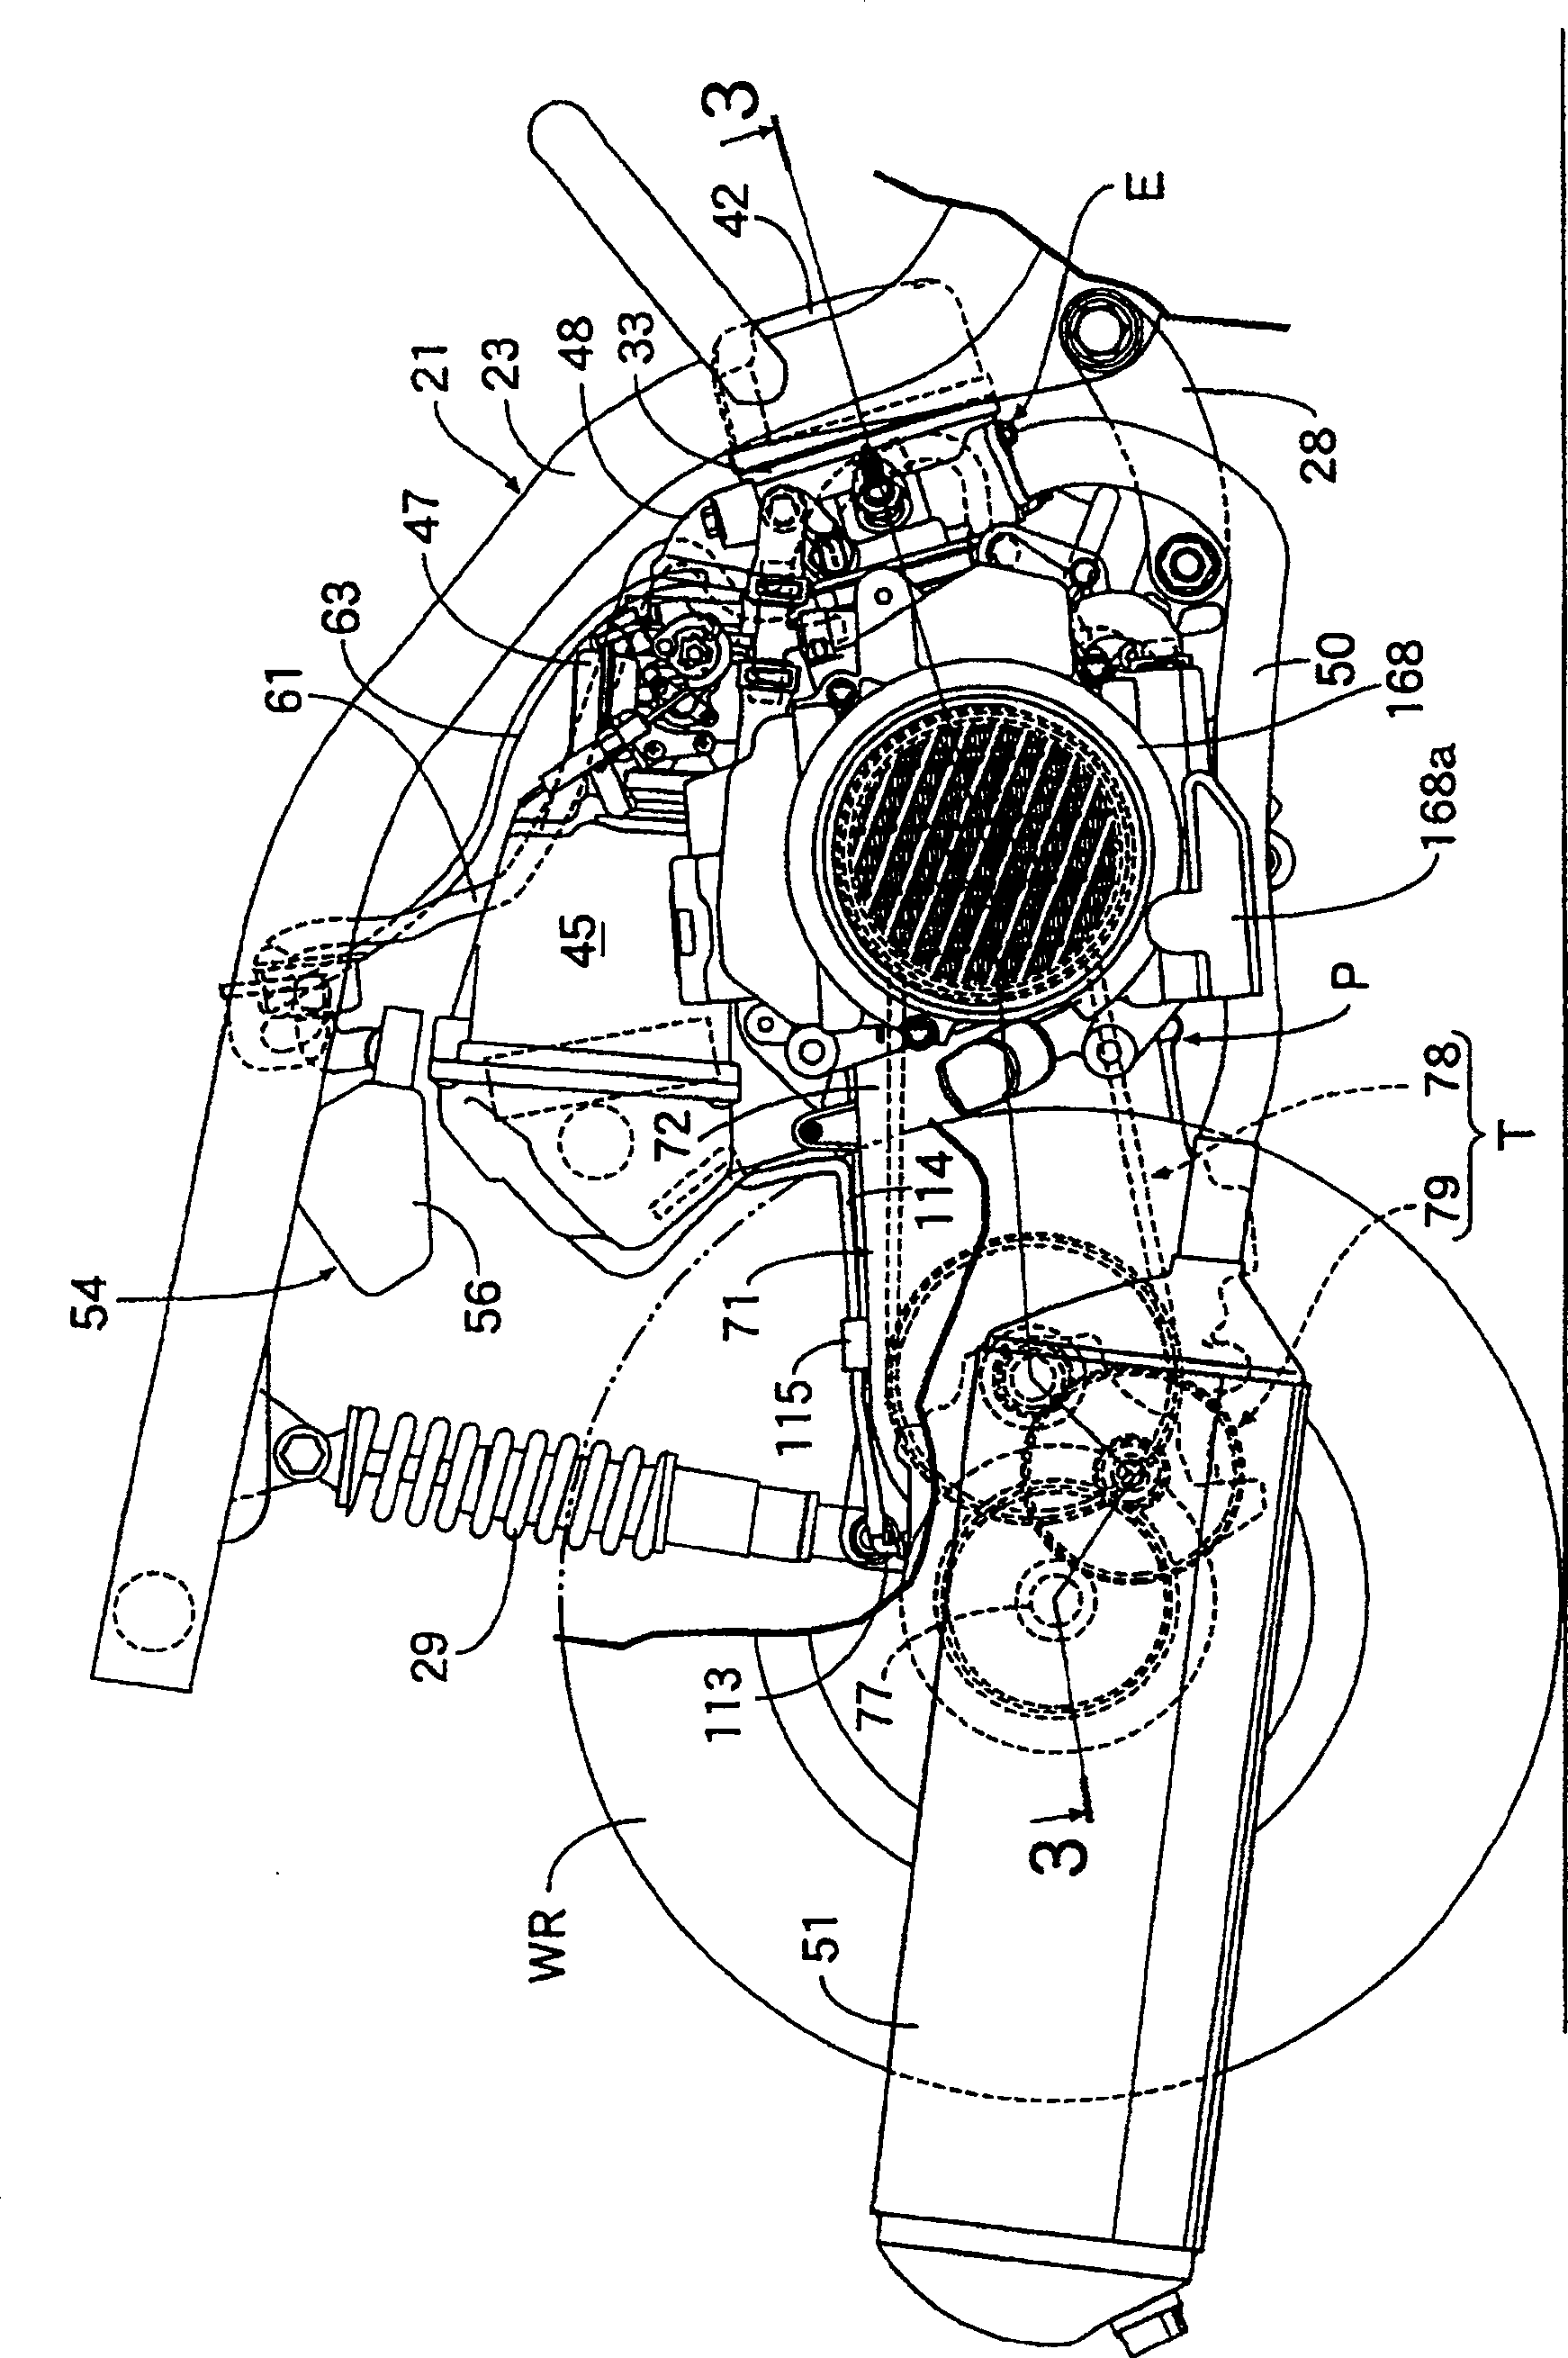 Two-wheeled motor vehicle transmission box aeration structure